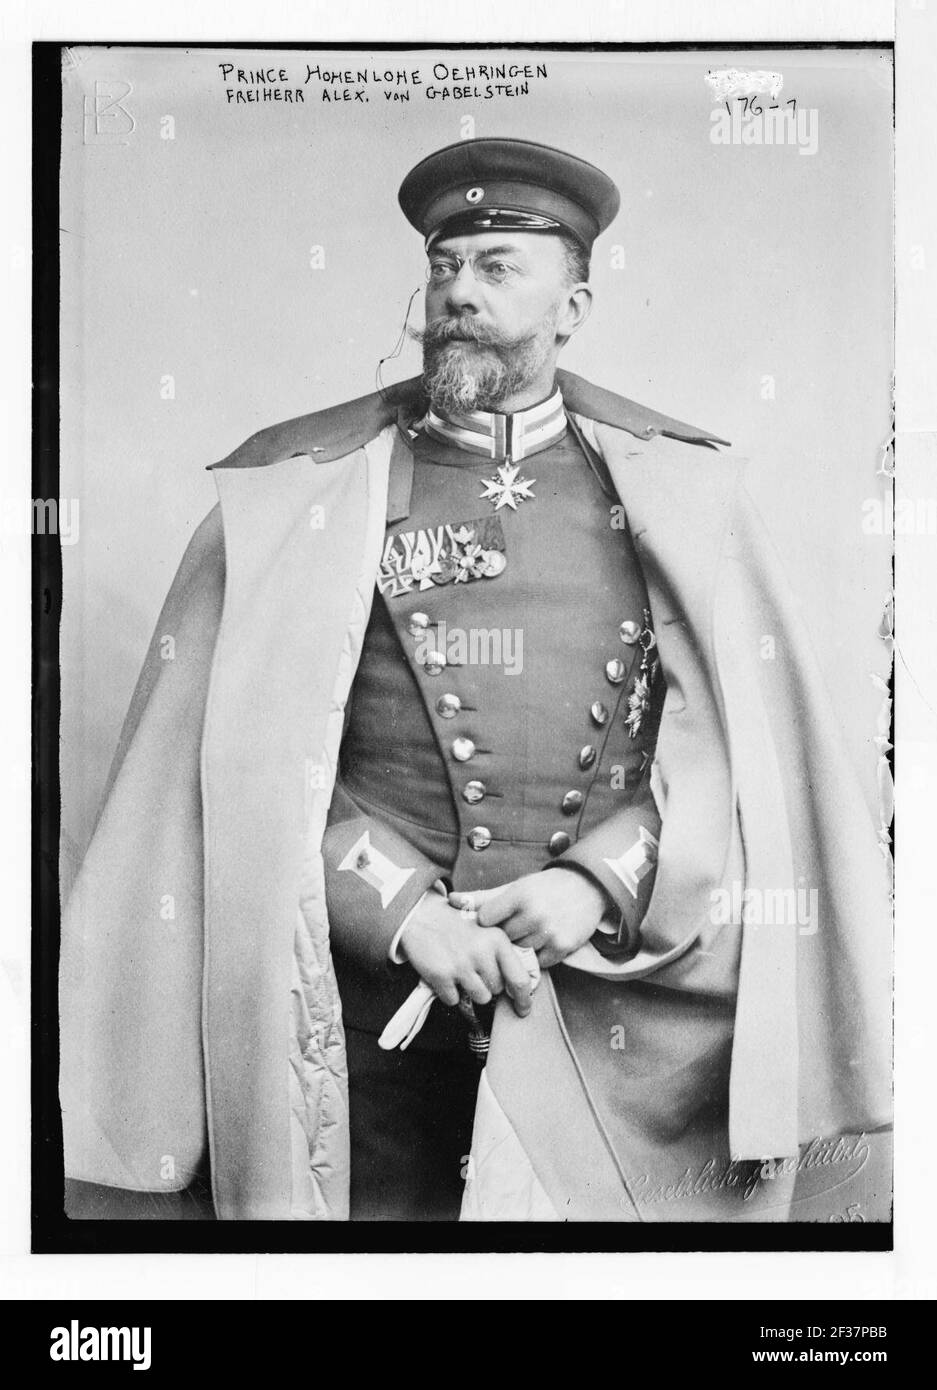 Prince Hohenlohe Oehringen, Freiherr Alex. Von Gabelstein, standing, in uniform, Gestulich geschurt. - Gesetulich Stock Photo